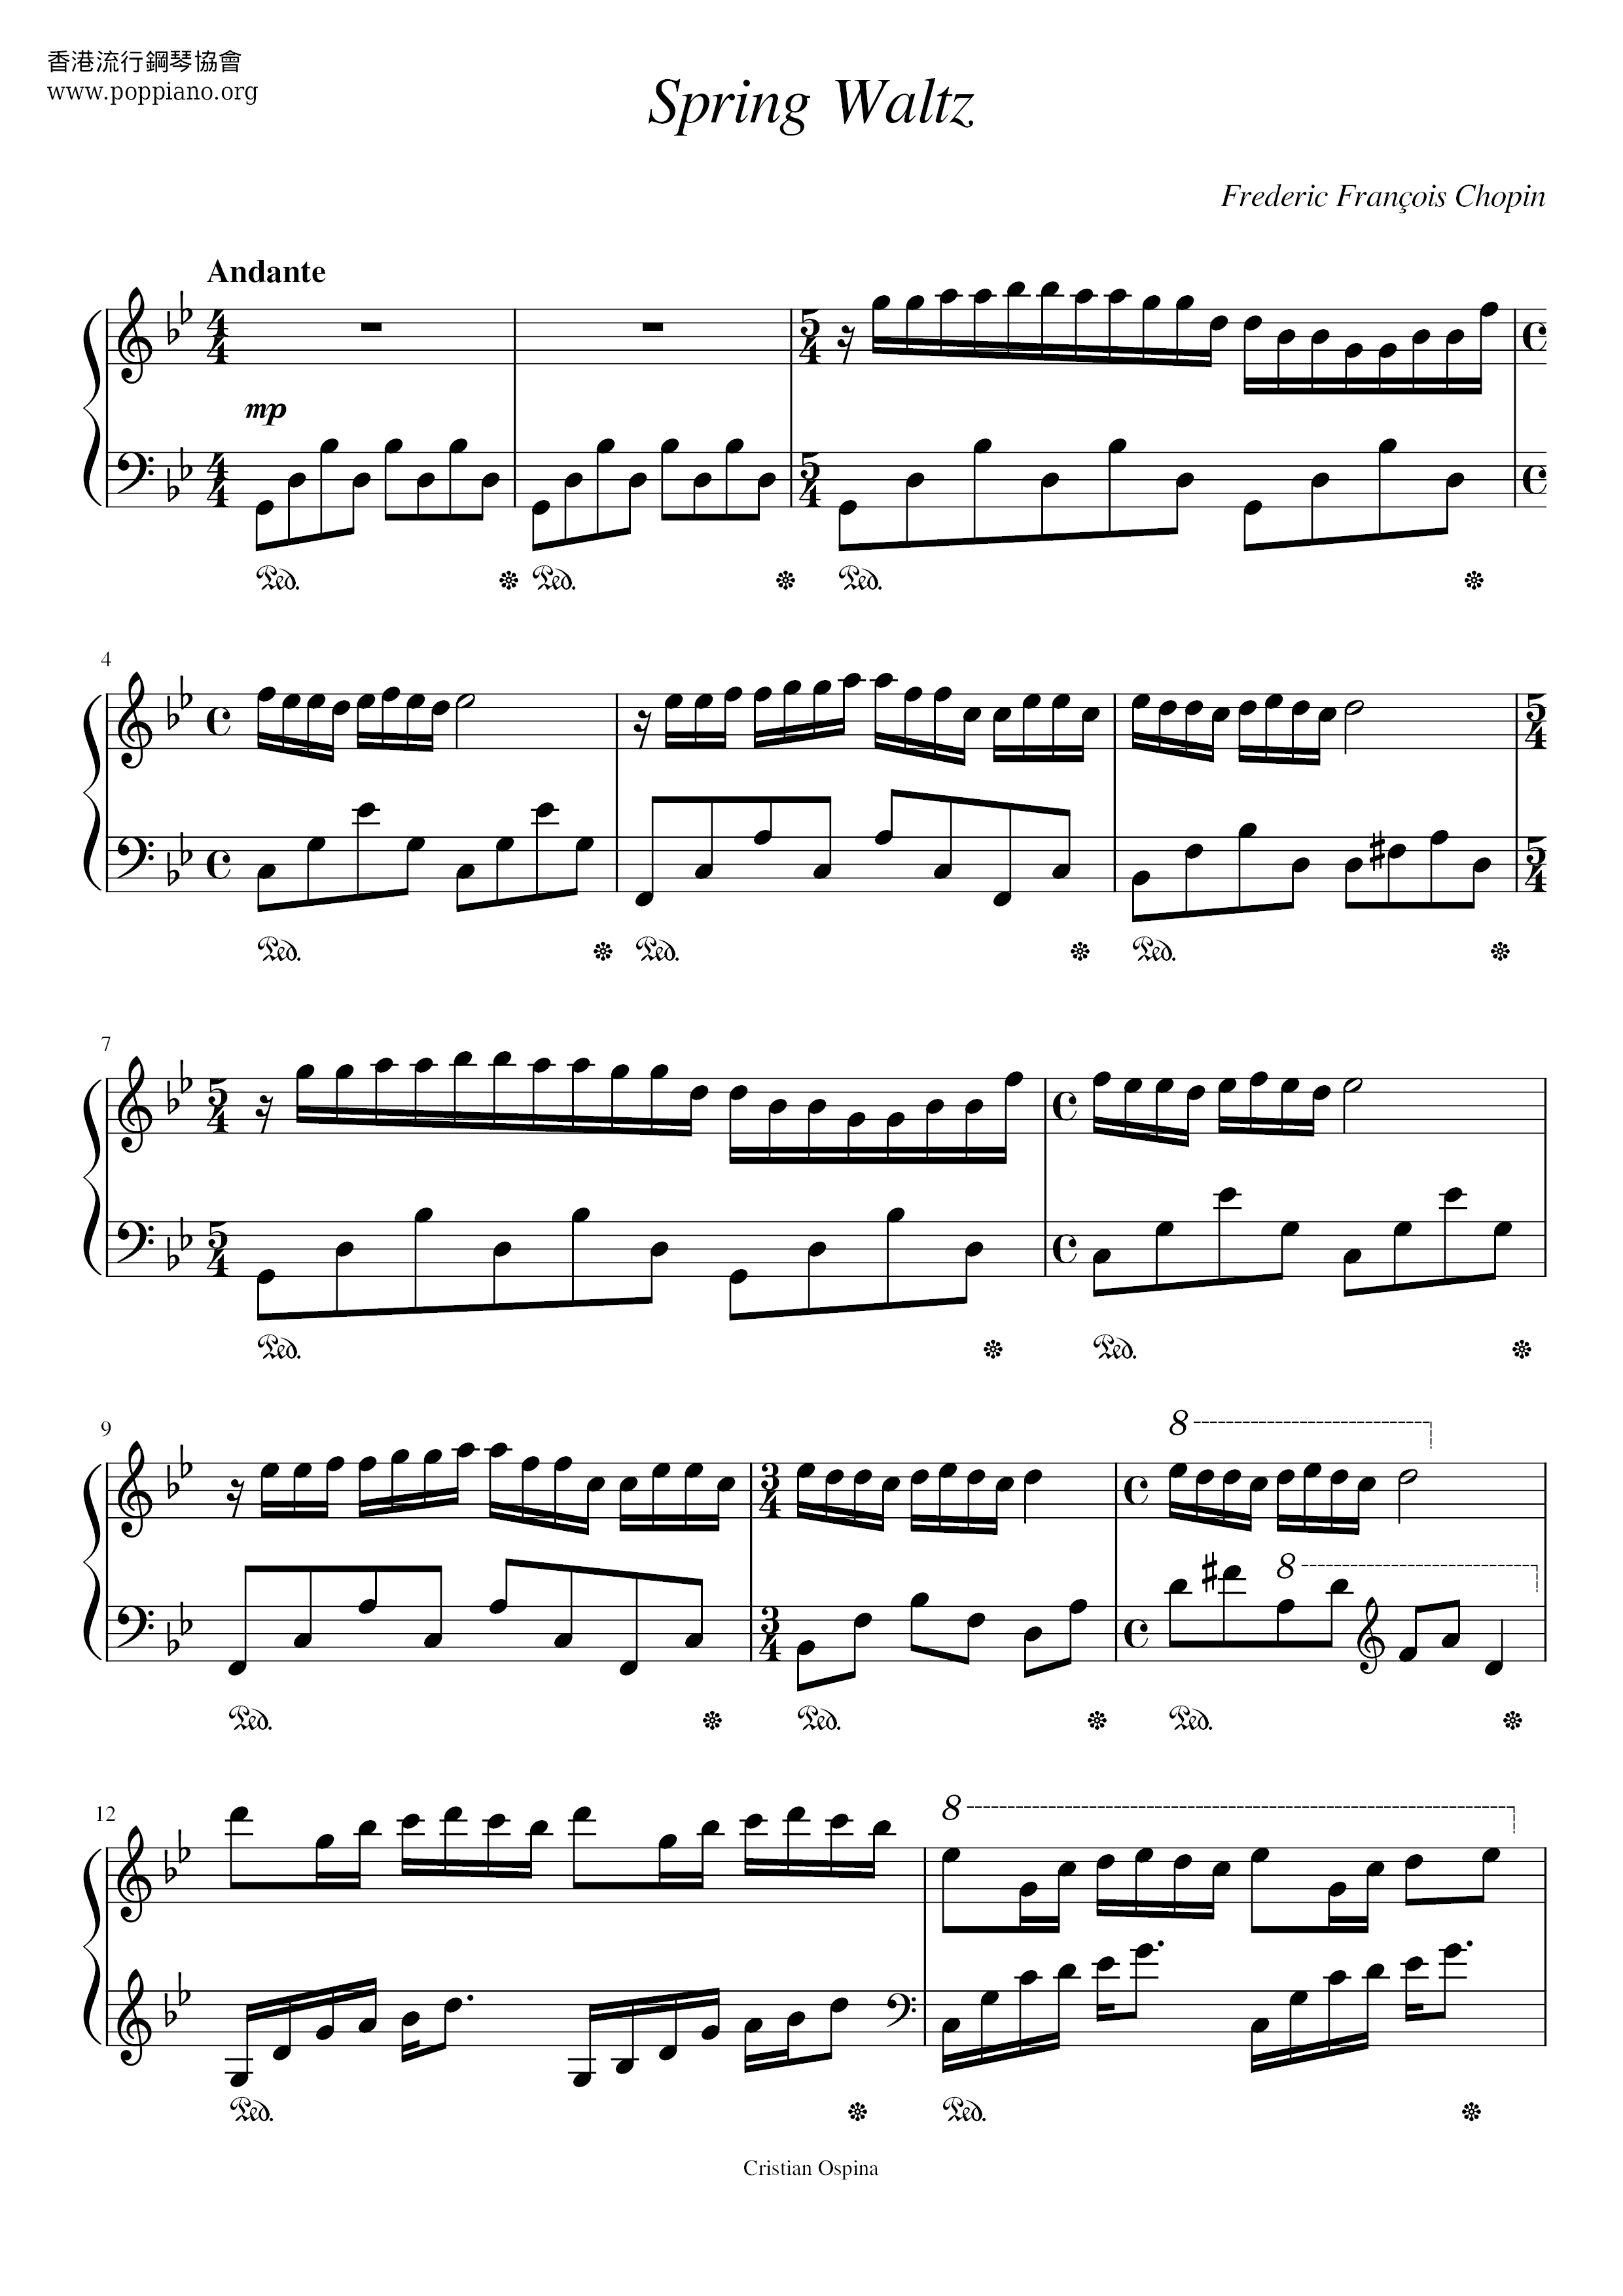 chopin-spring-waltz-sheet-music-pdf-free-score-download